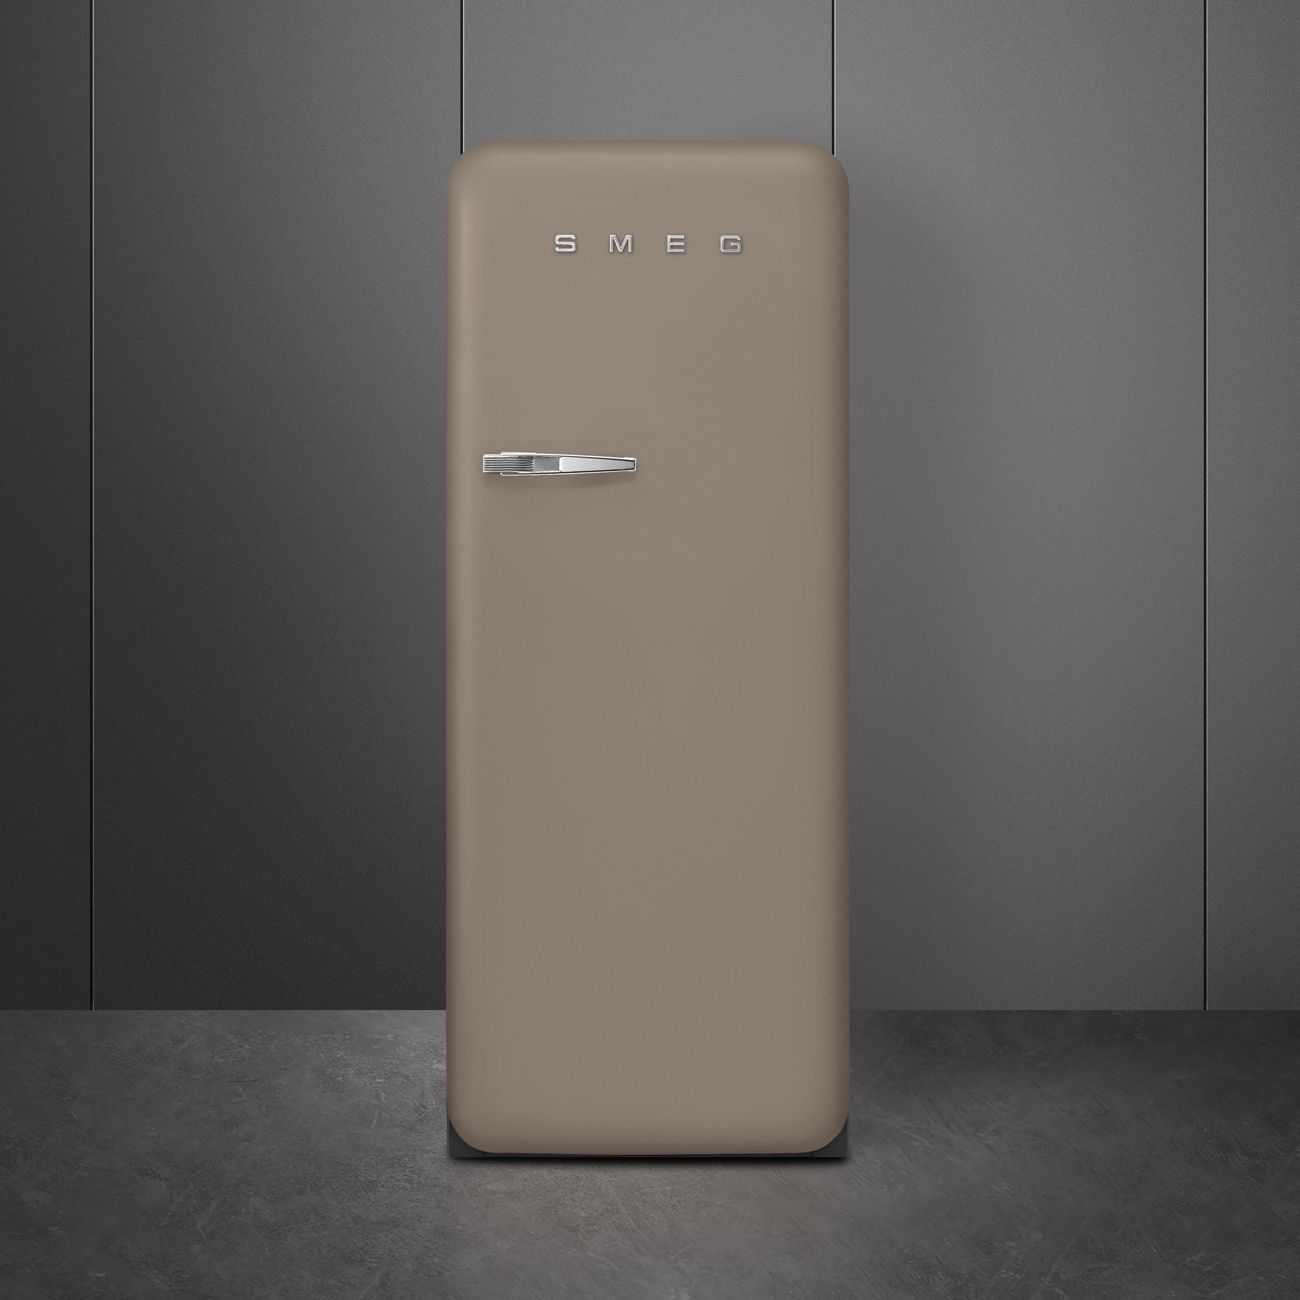 Taupe refrigerator - Smeg_9